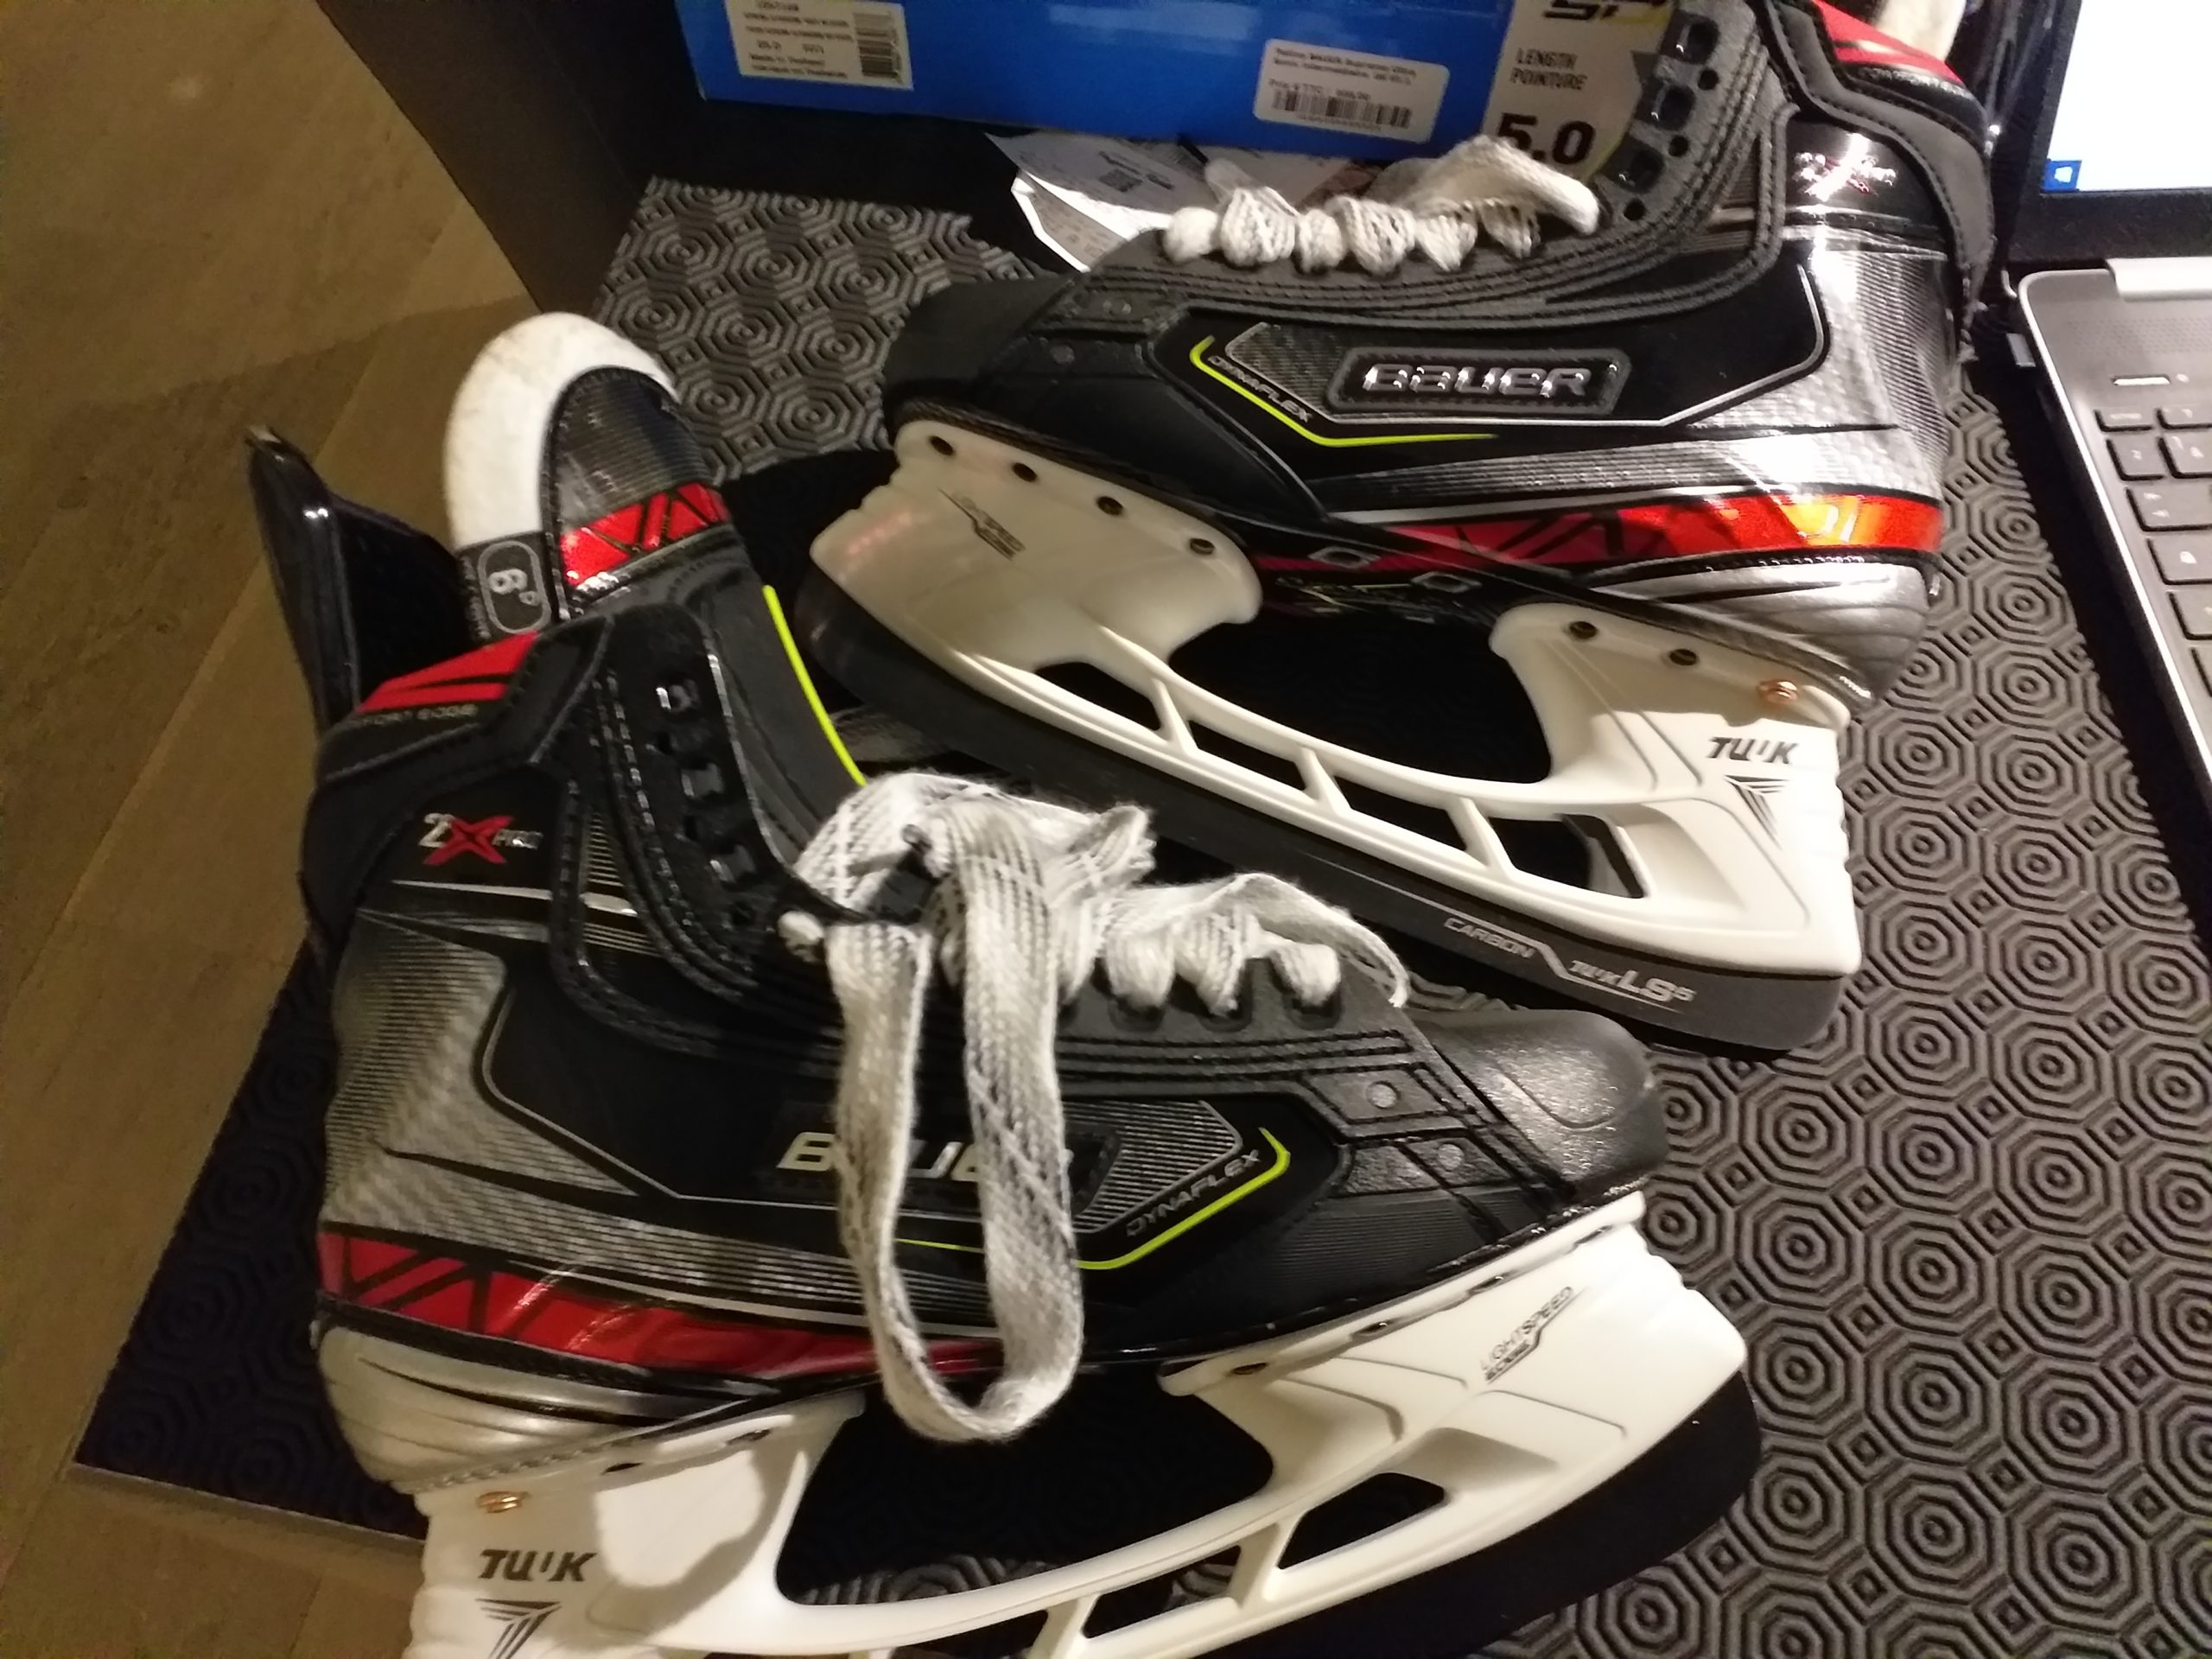 patin hockey bauer vapor 2Xpro en taille 40.5